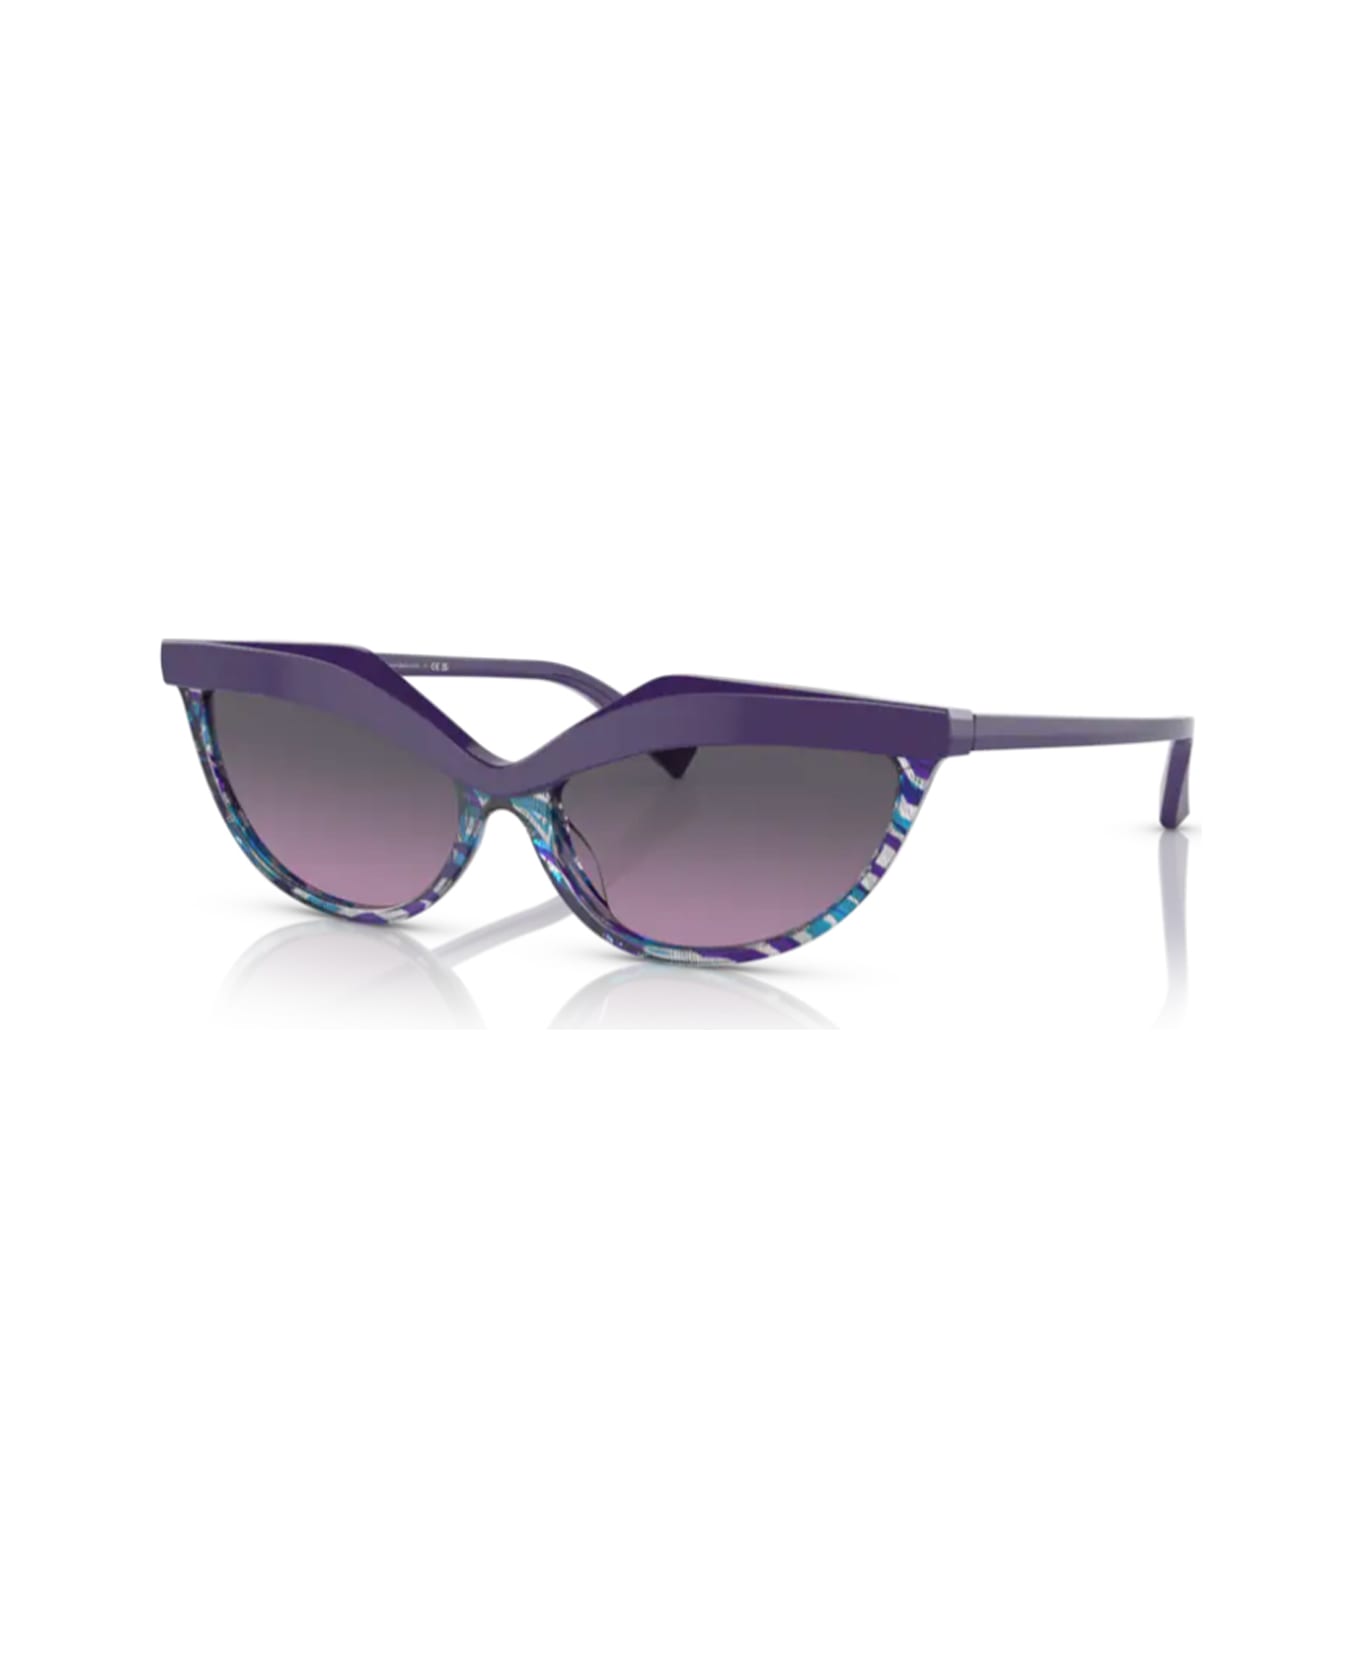 Alain Mikli A05070 Sunglasses - Viola サングラス